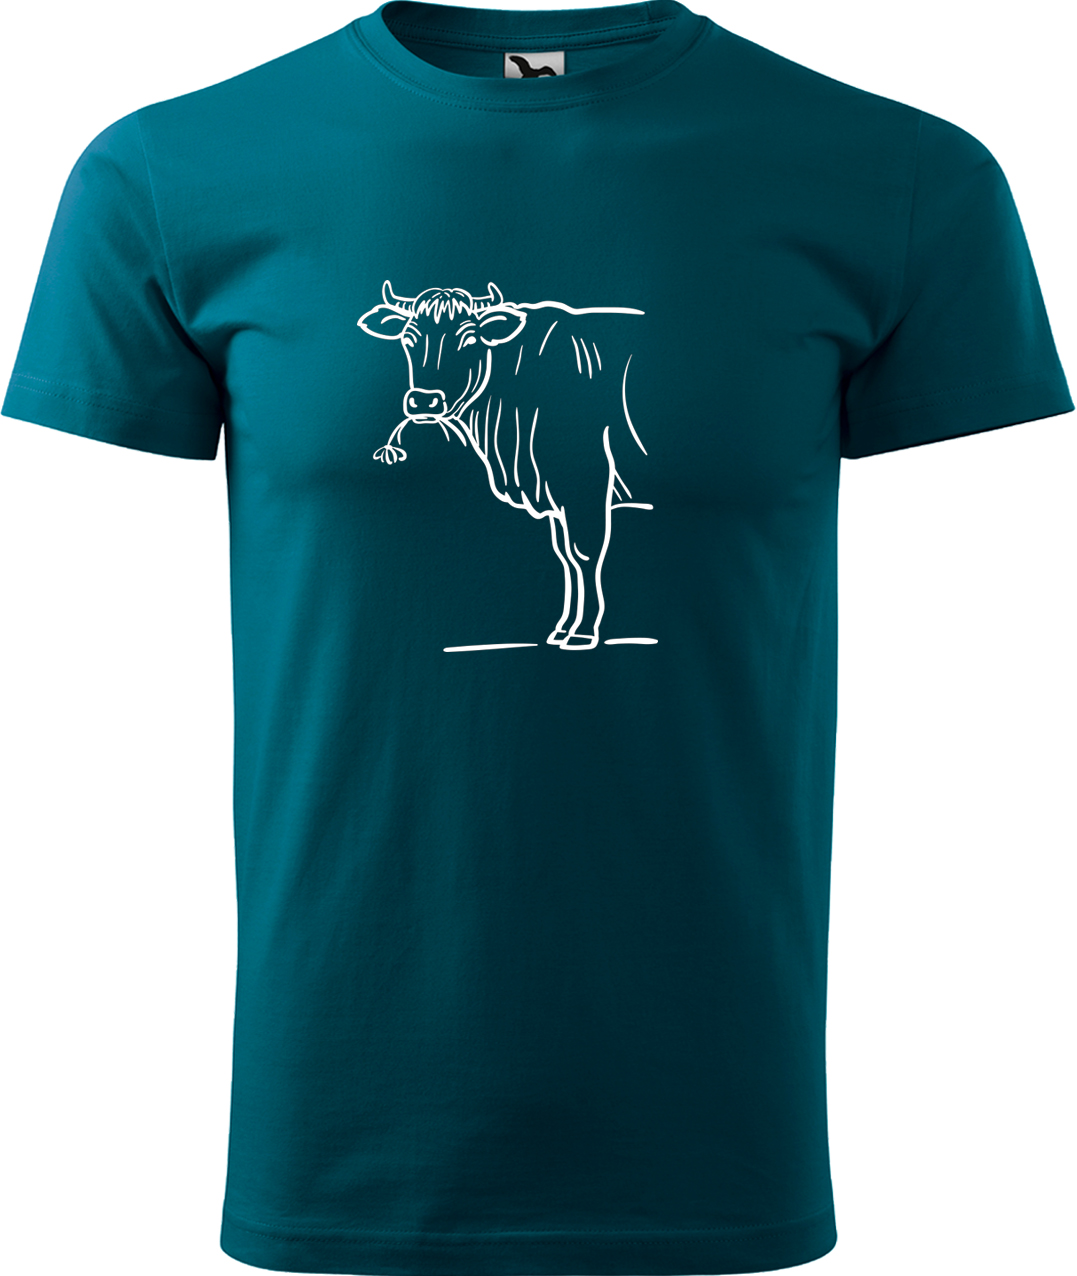 Pánské tričko s krávou - Býk Velikost: M, Barva: Petrolejová (93), Střih: pánský